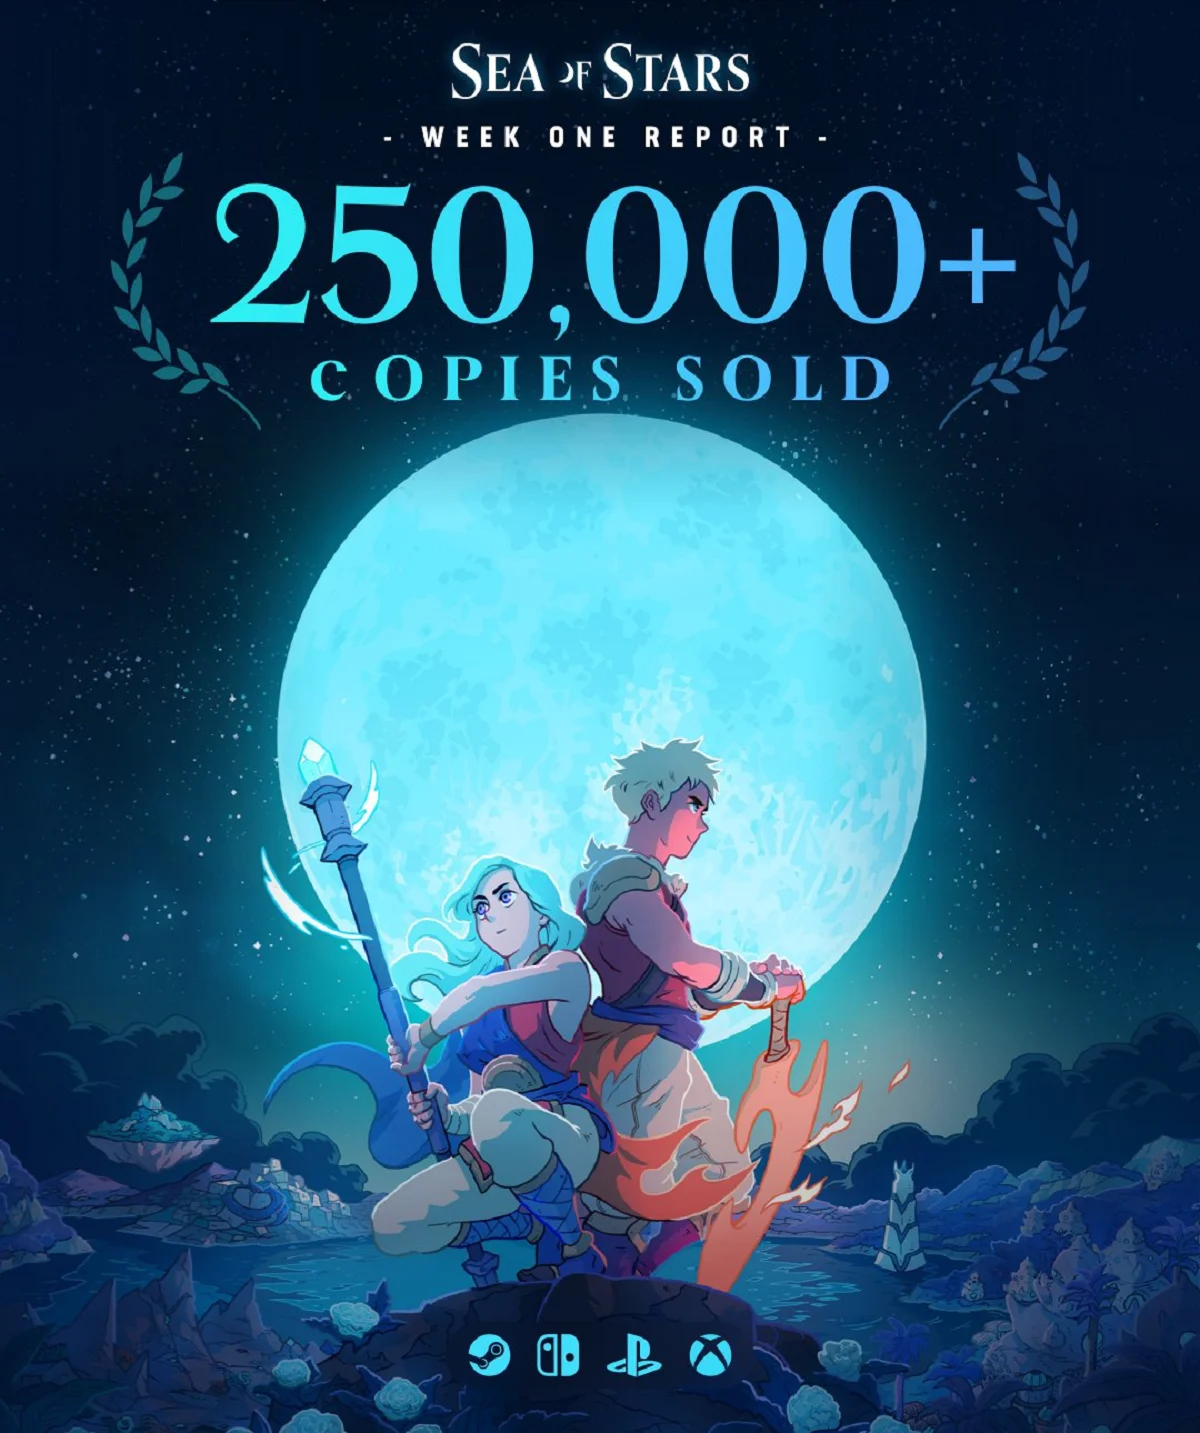 Авторы приключения Sea of Stars продали больше 250 тыс копий игры - фото 1